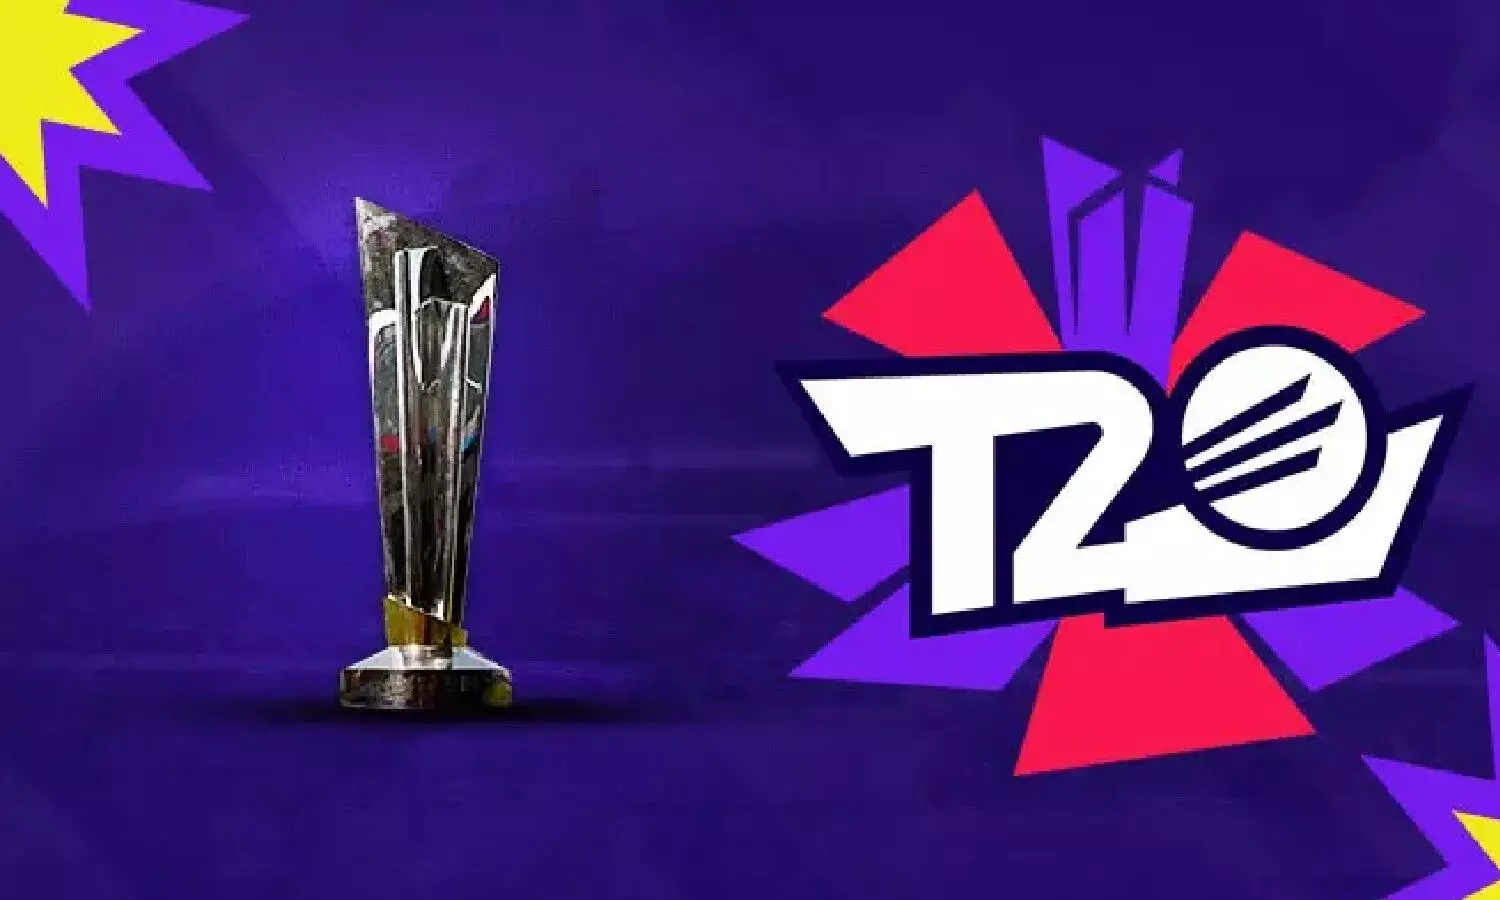 ICC T20 World Cup 2021:  17 अक्टूबर से टी 20 विश्व कप का होगा आगाज़, जानें वर्ल्ड कप मैचों का पूरा शेड्यूल